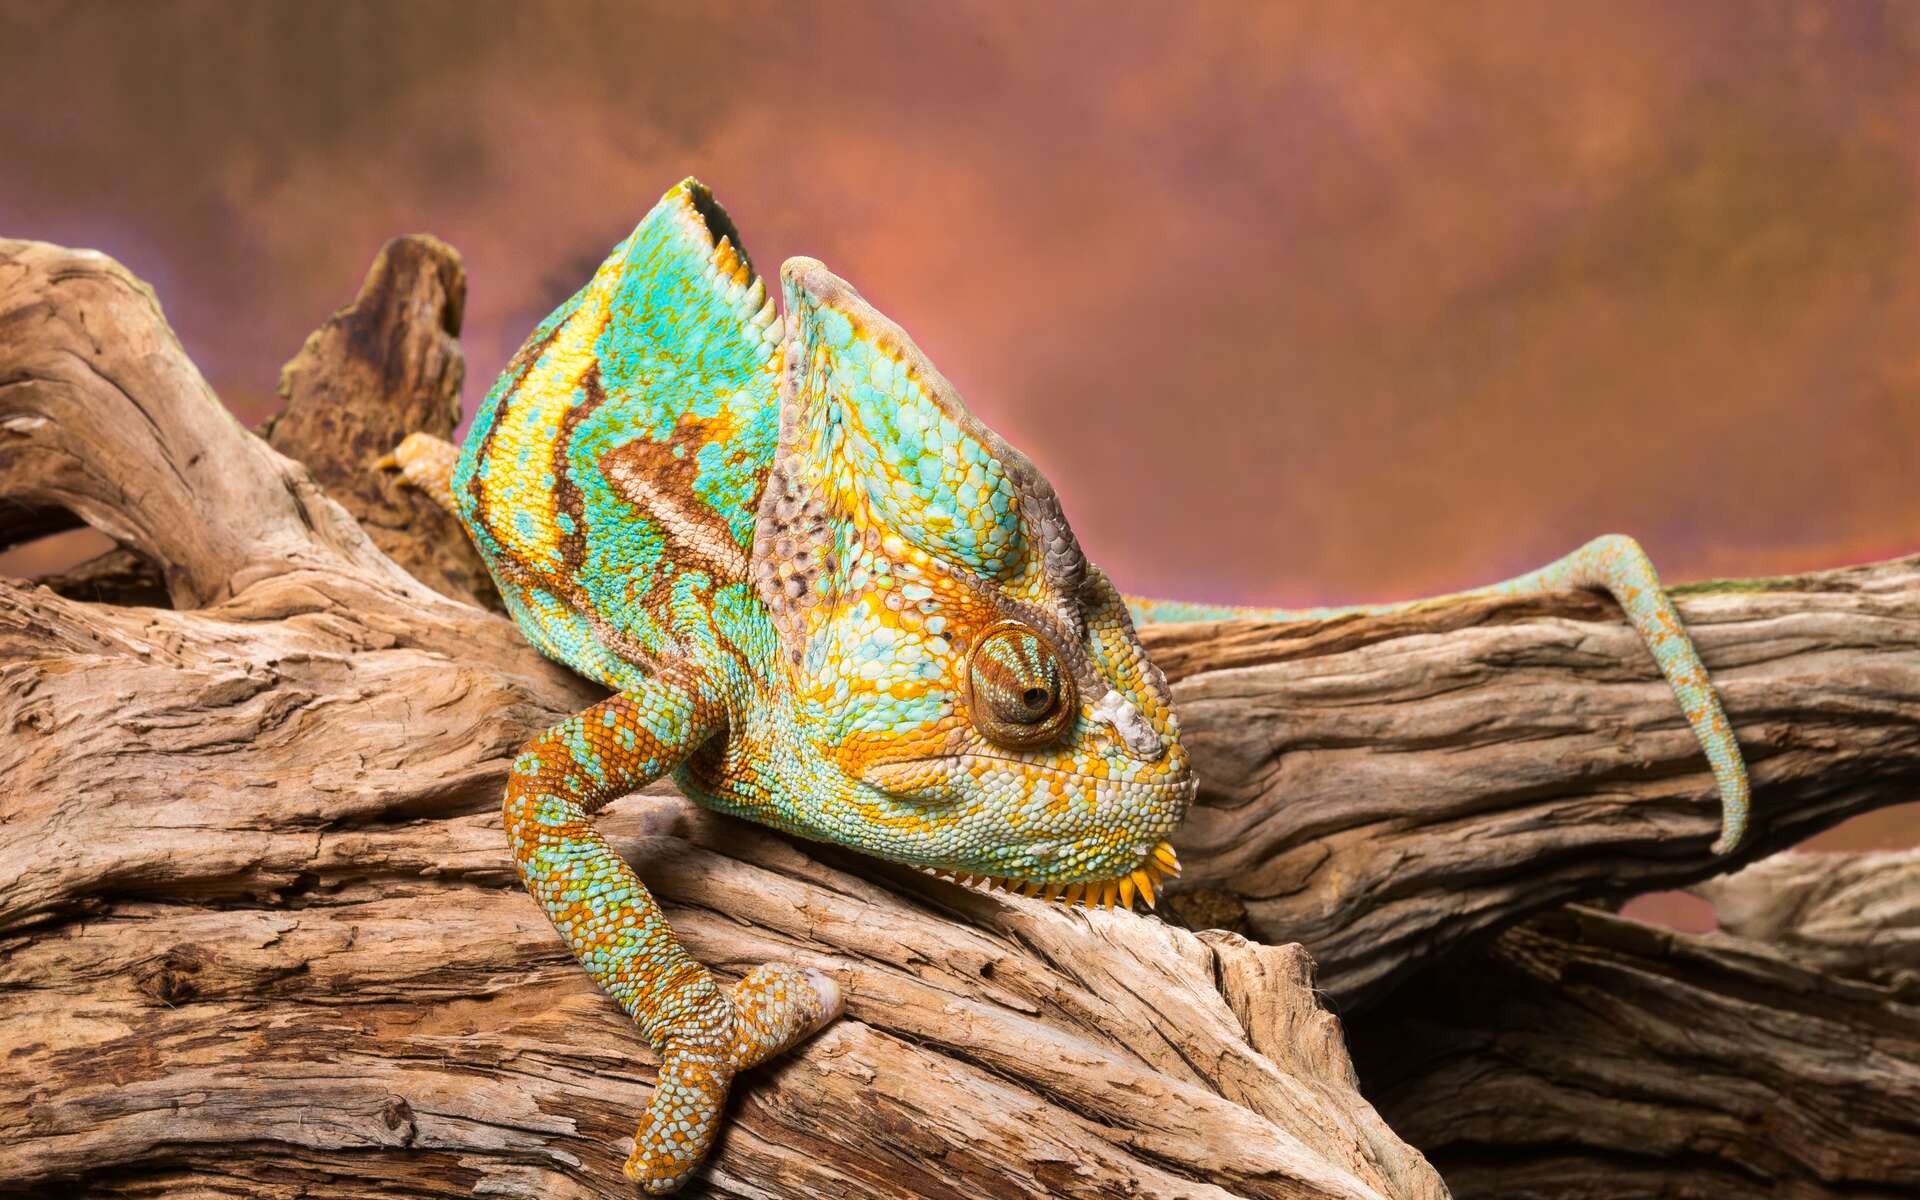 Images exceptionnelles d'une caméléon qui s'illumine de toutes les couleurs avant de s'éteindre